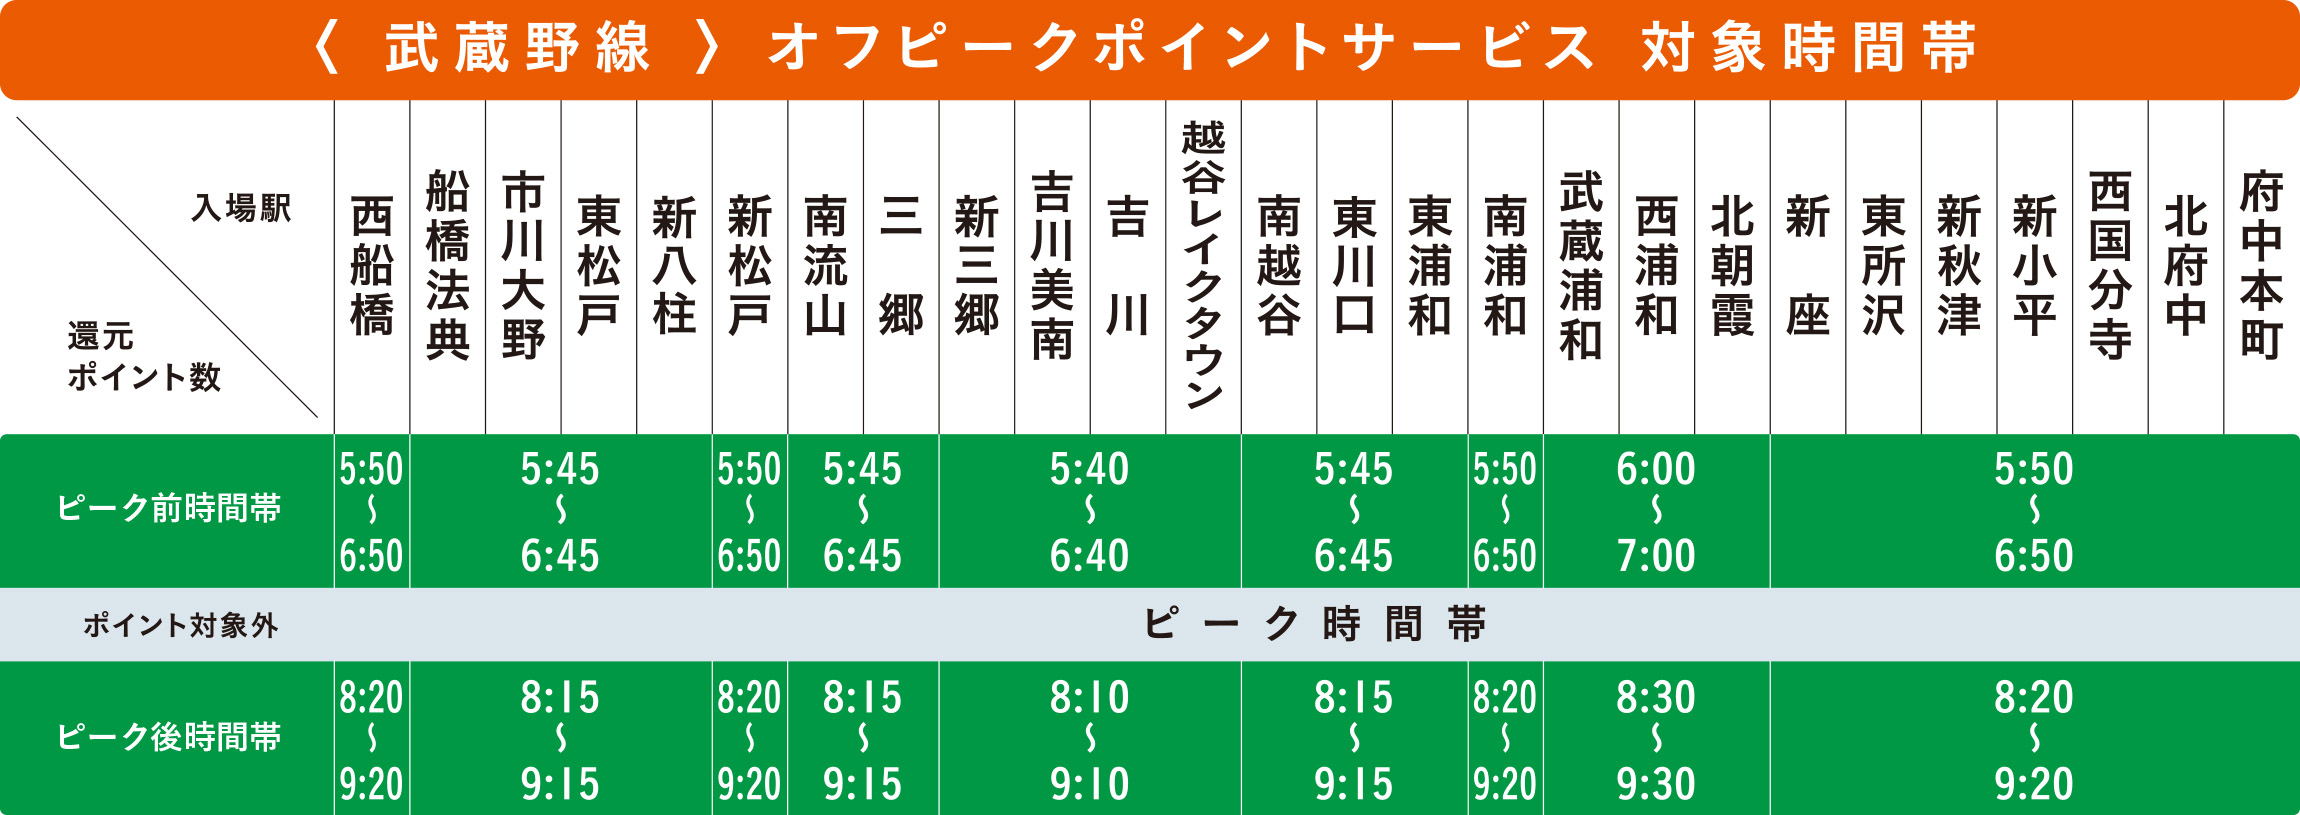 武蔵野線オフピークポイントサービス対象時間帯